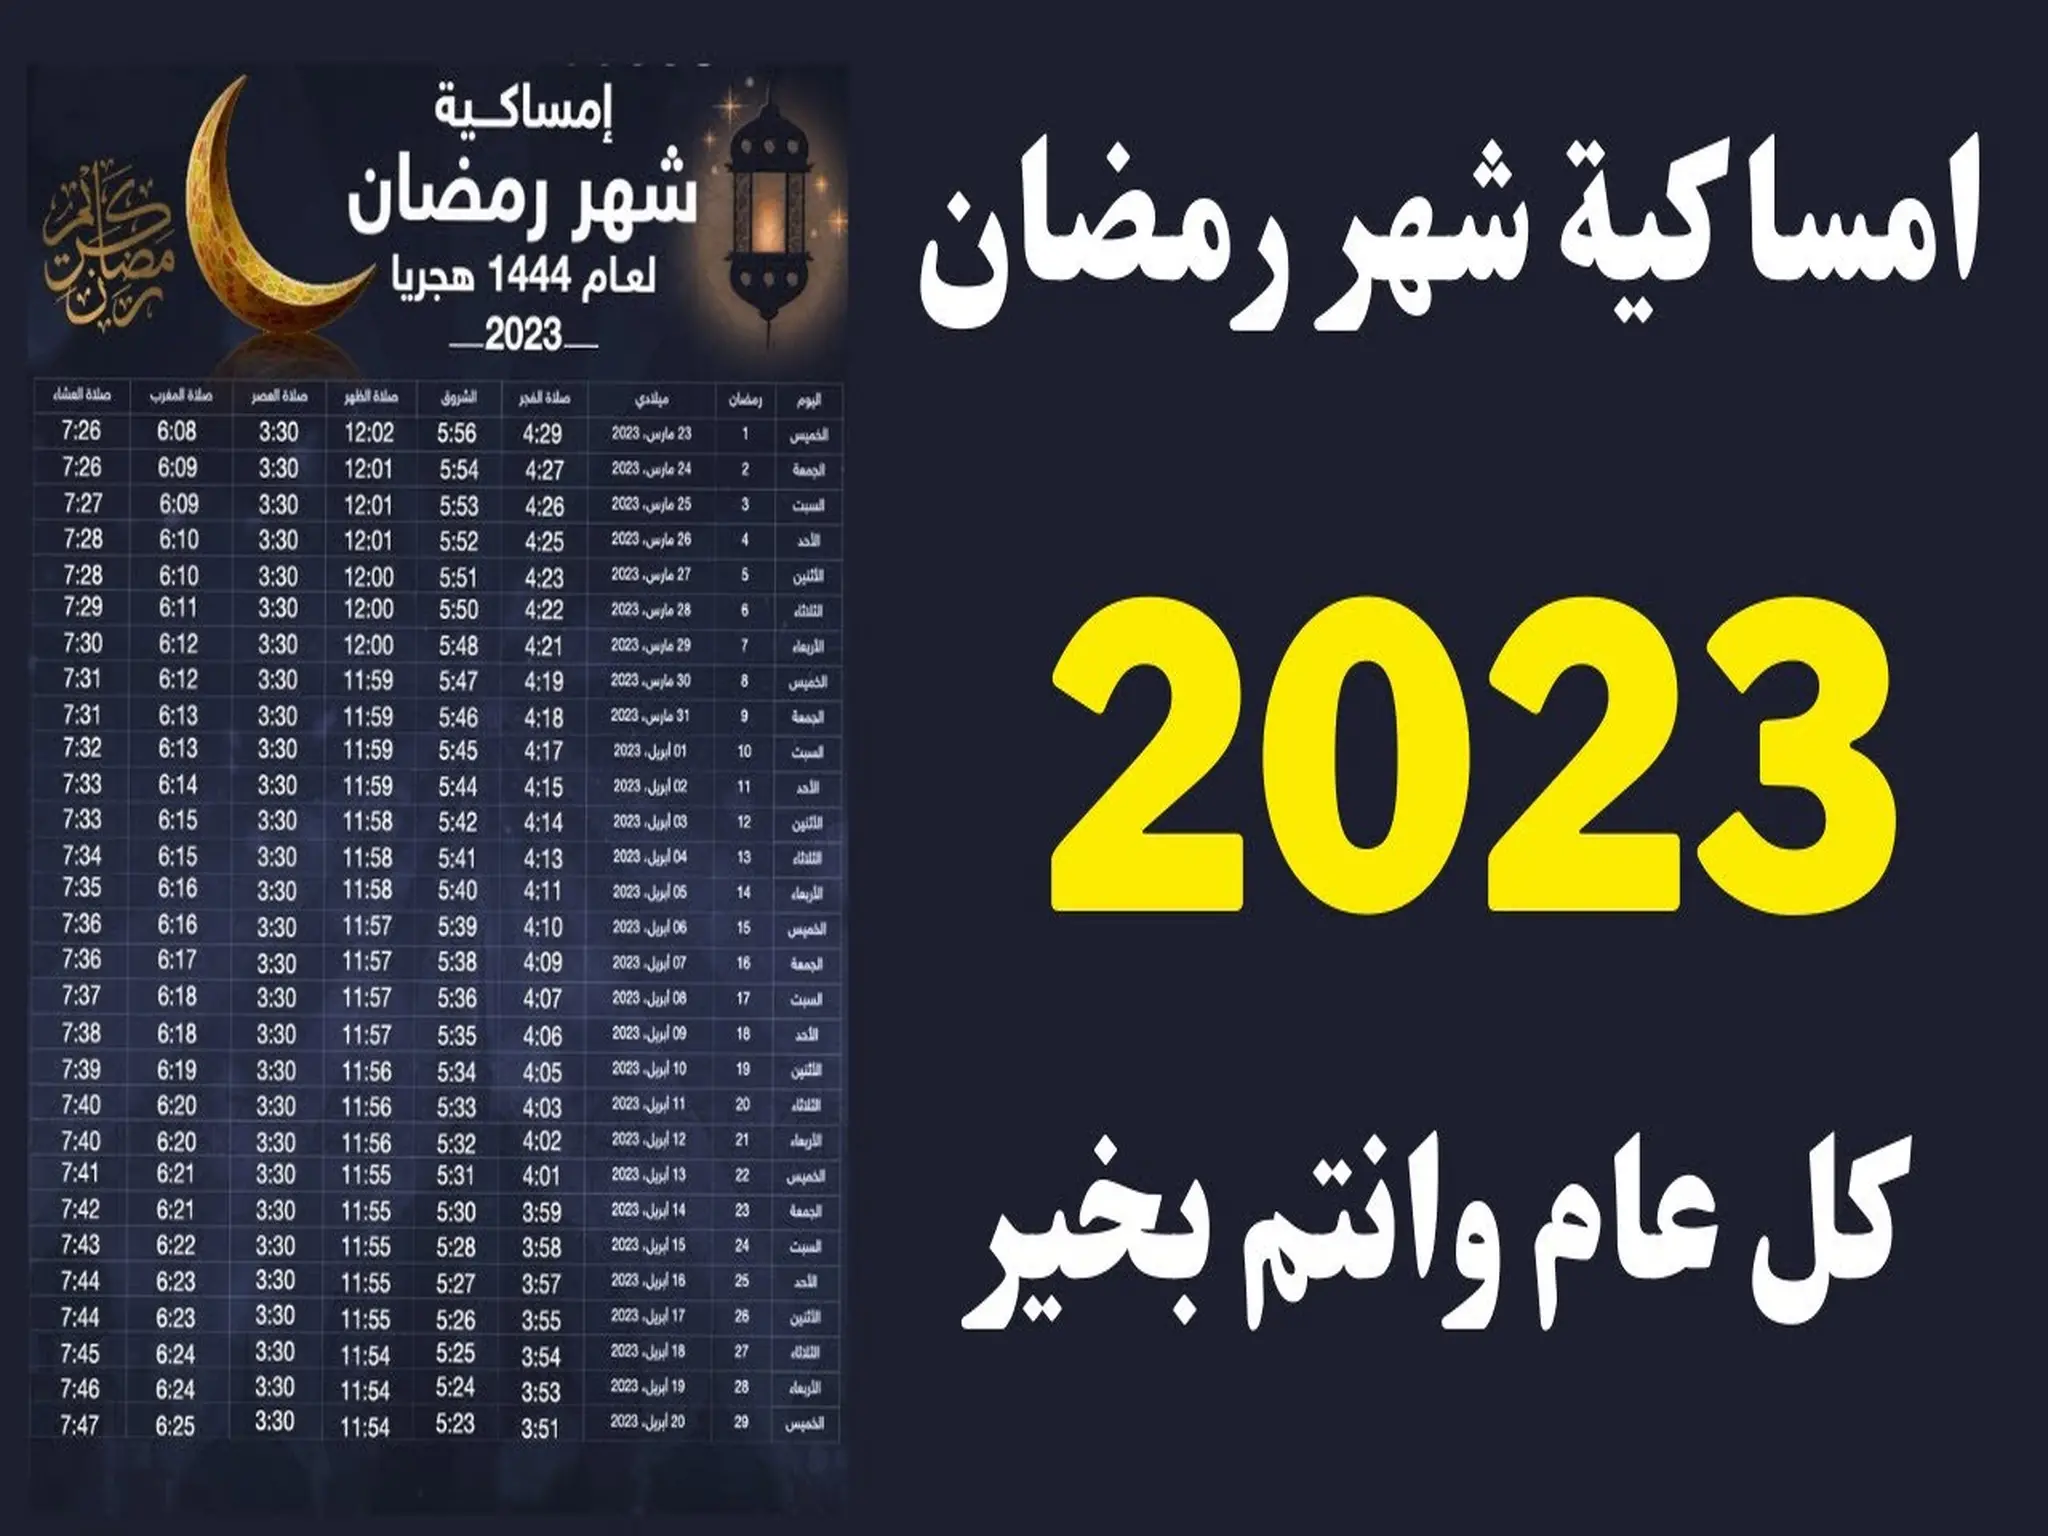 إمساكية رمضان 2023 فى مصر وموعد الإفطار والسحور